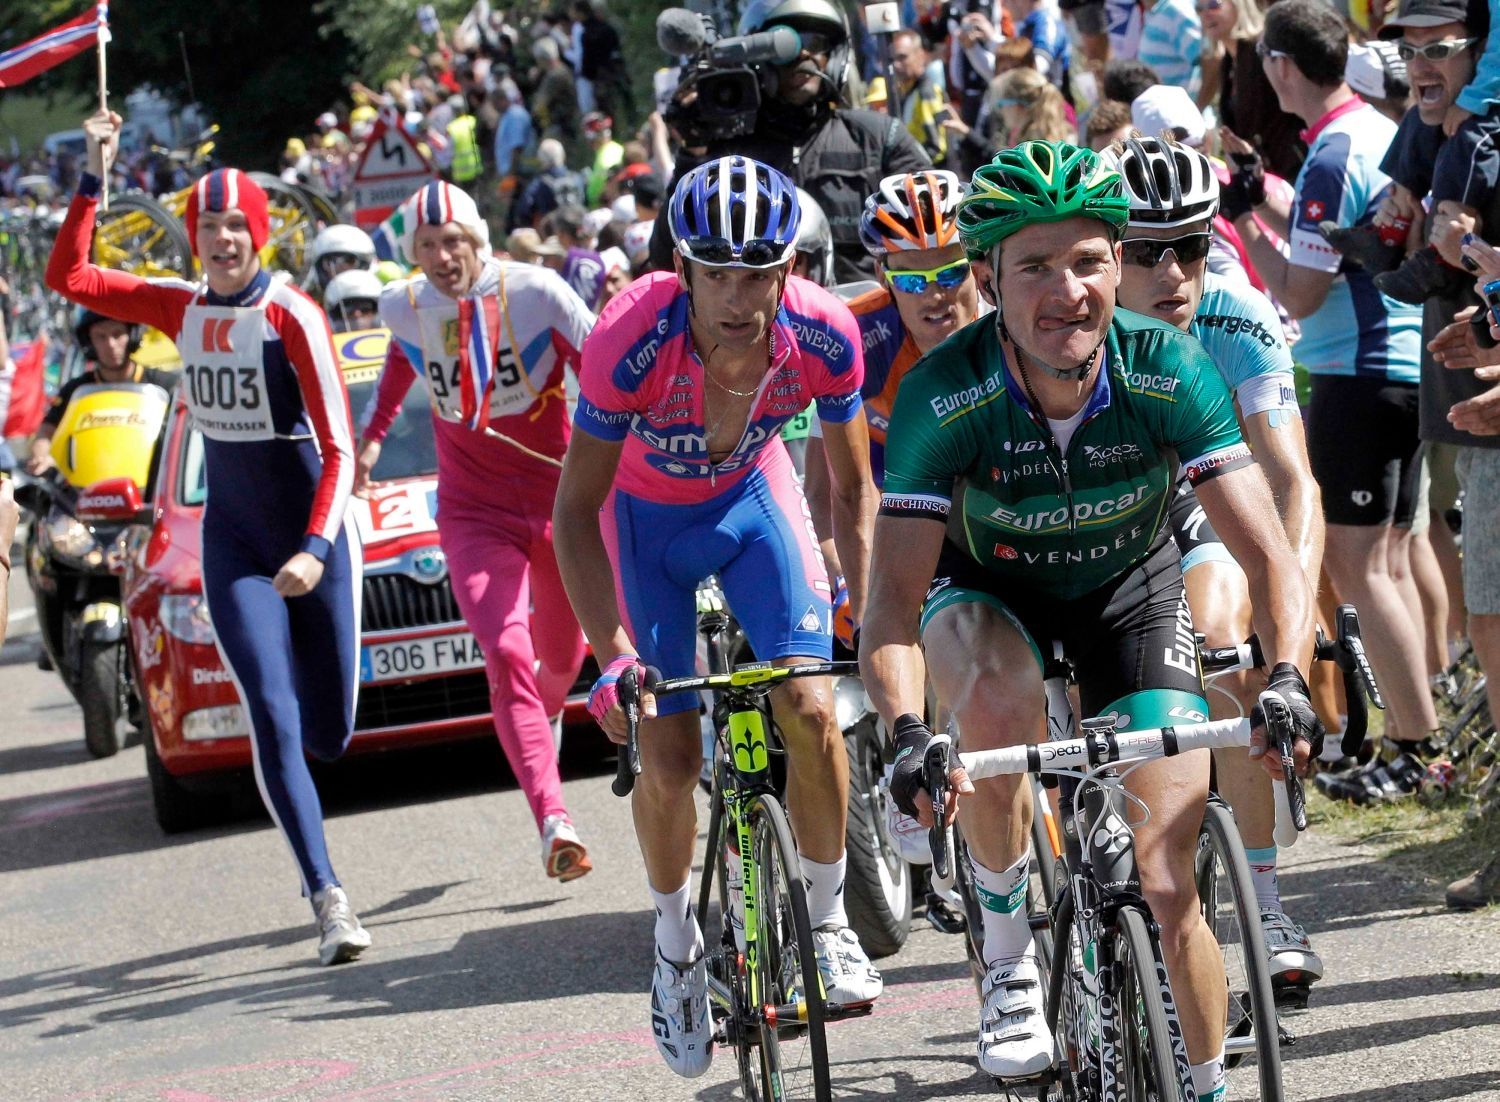 Francouzský cyklista Thomas Voeckler ze stáje Europcar dojíždí závod v desáté etapě Tour de France 2012.